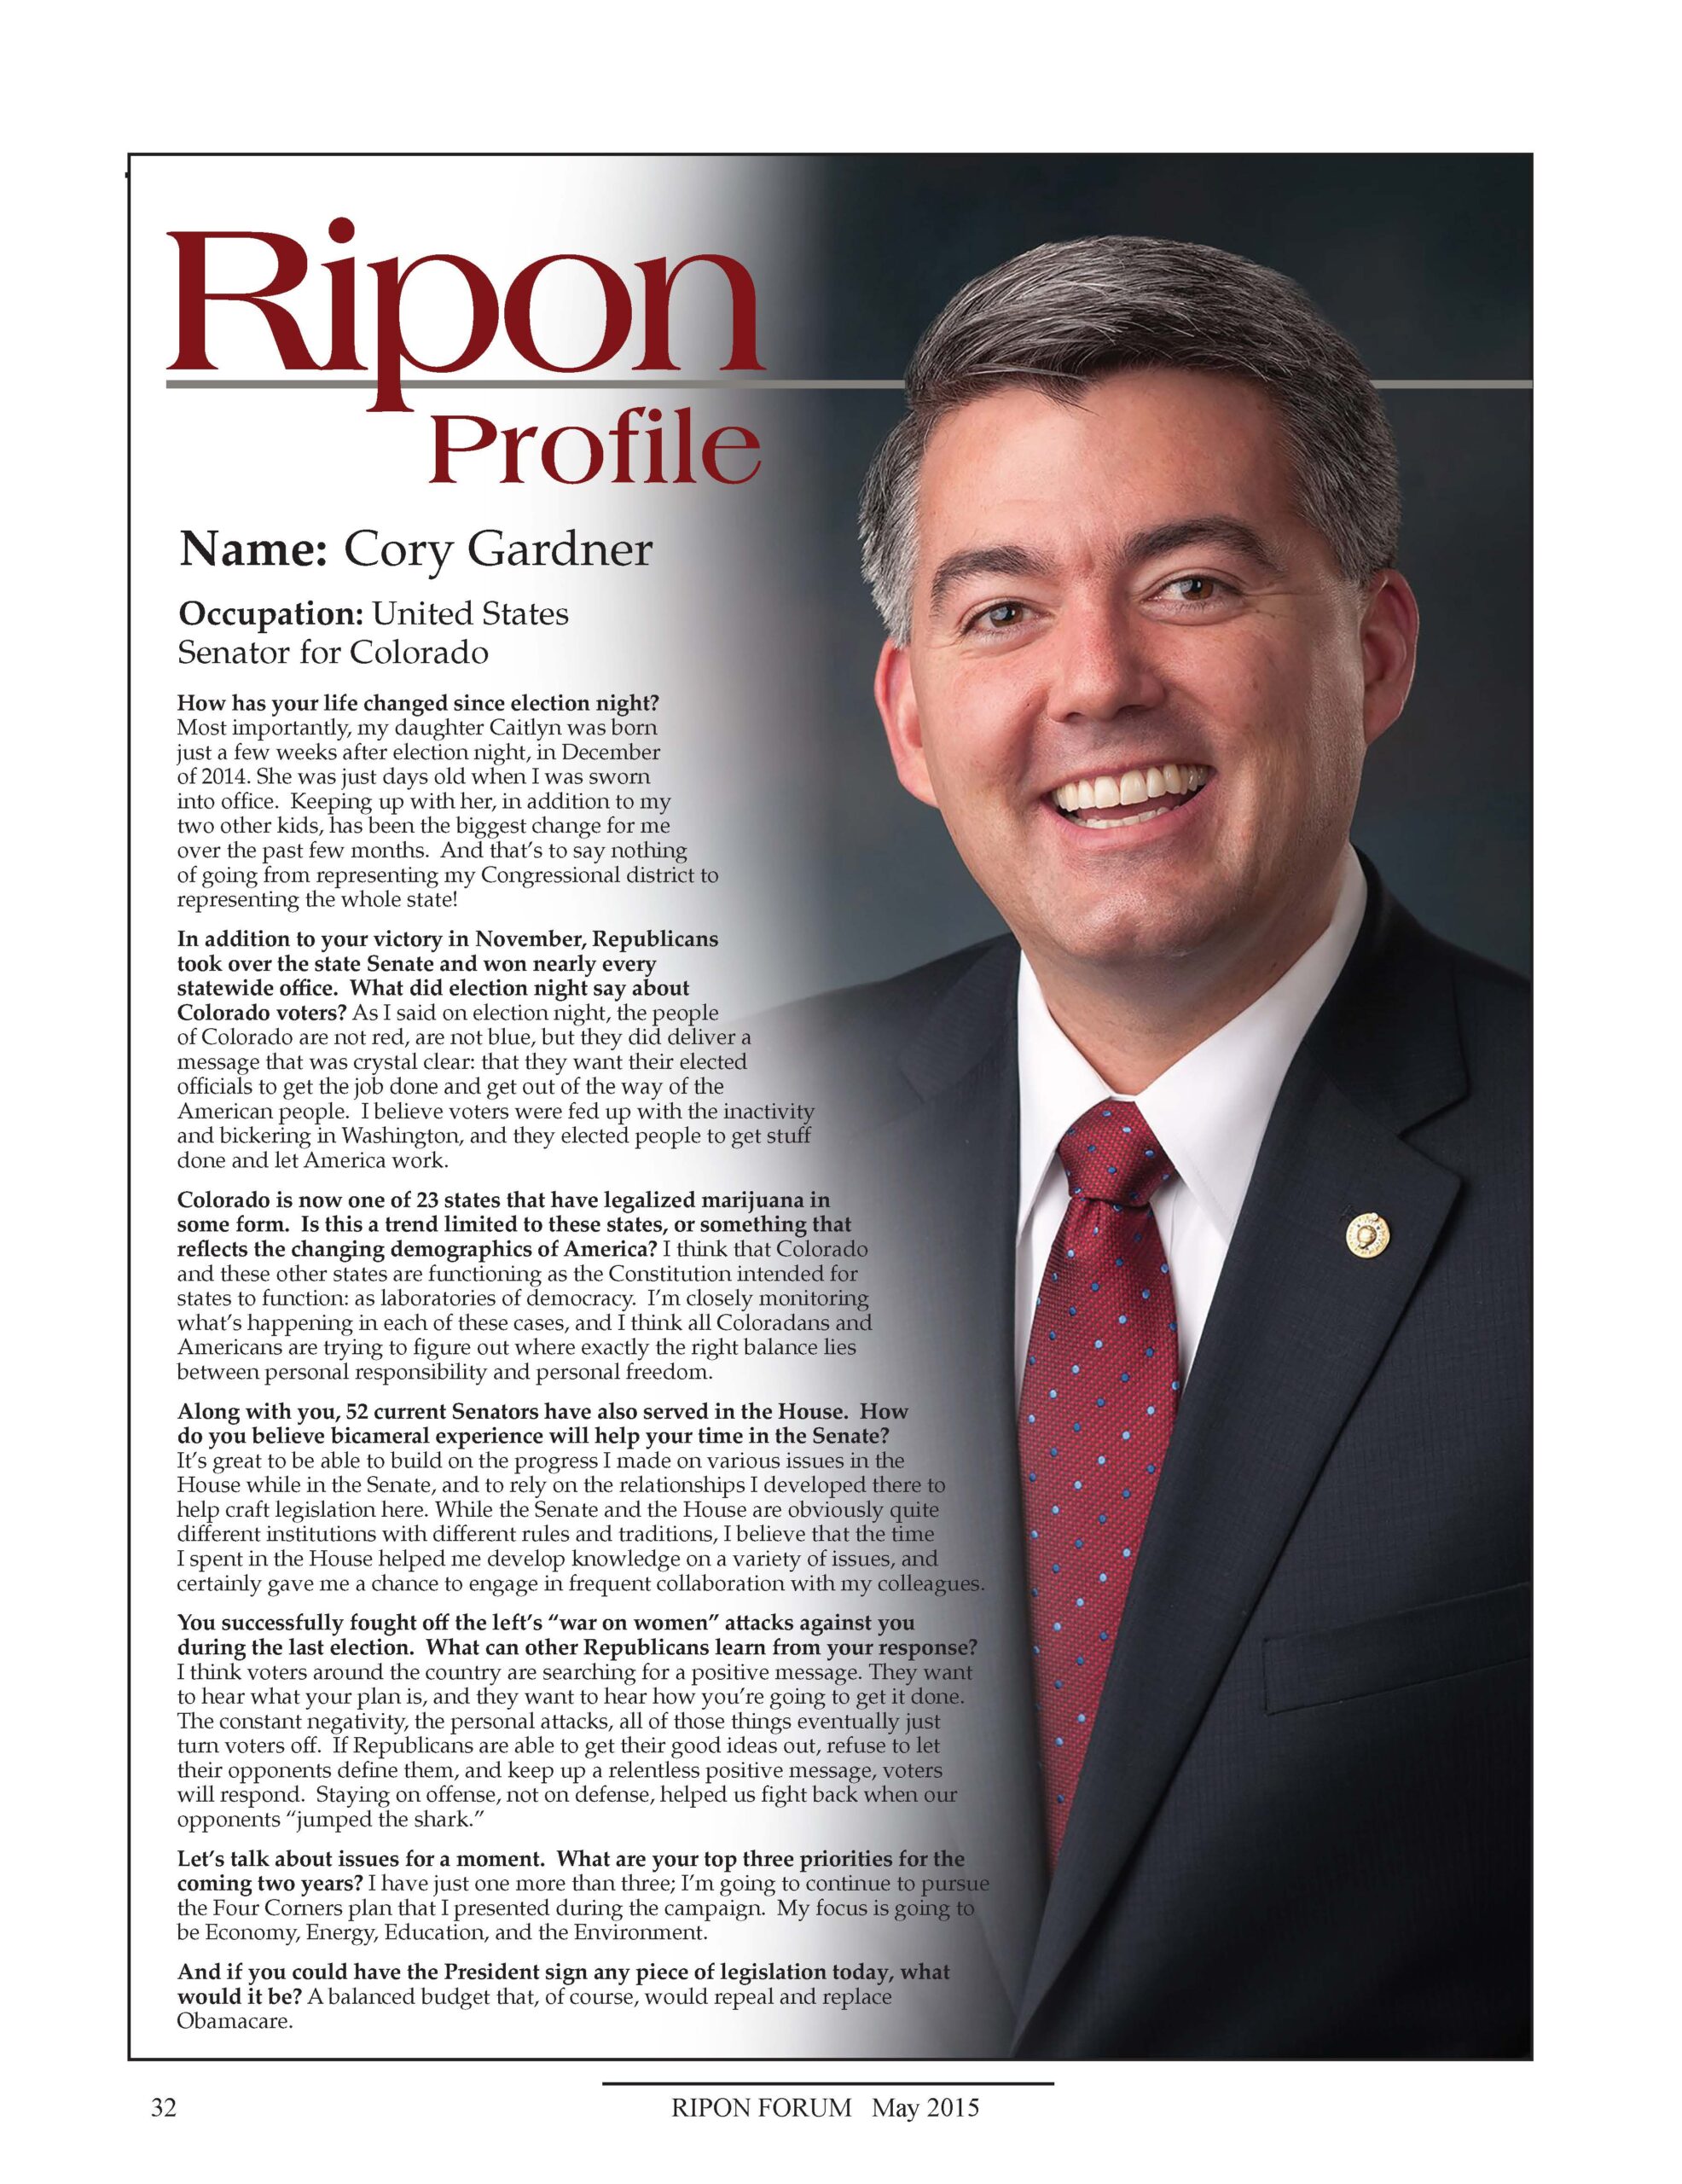 Ripon Profile of Cory Gardner